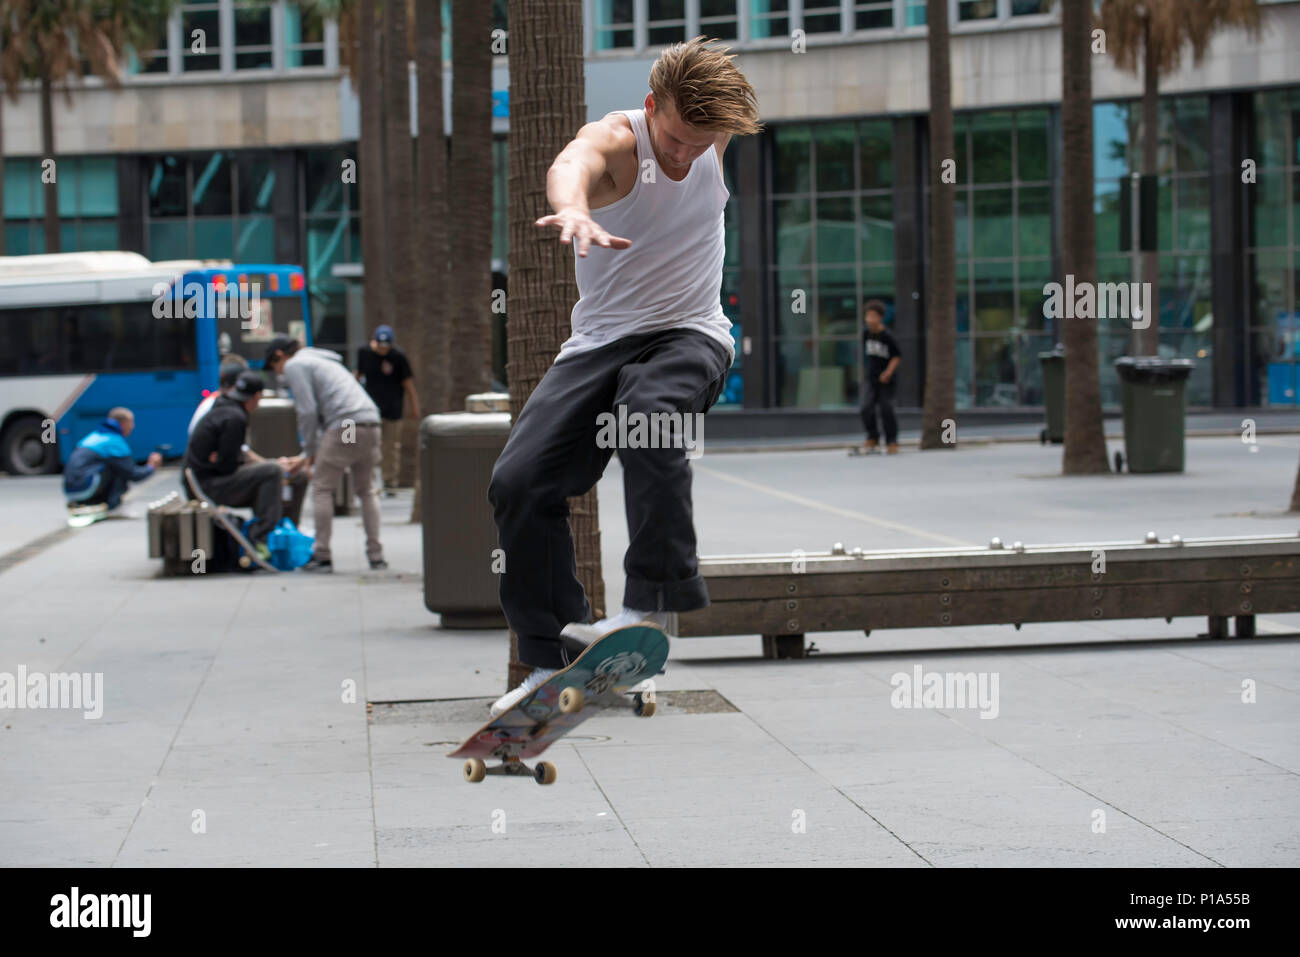 Un skate rider effectue un tour sur un banc dans la ville de Sydney, Australie Banque D'Images